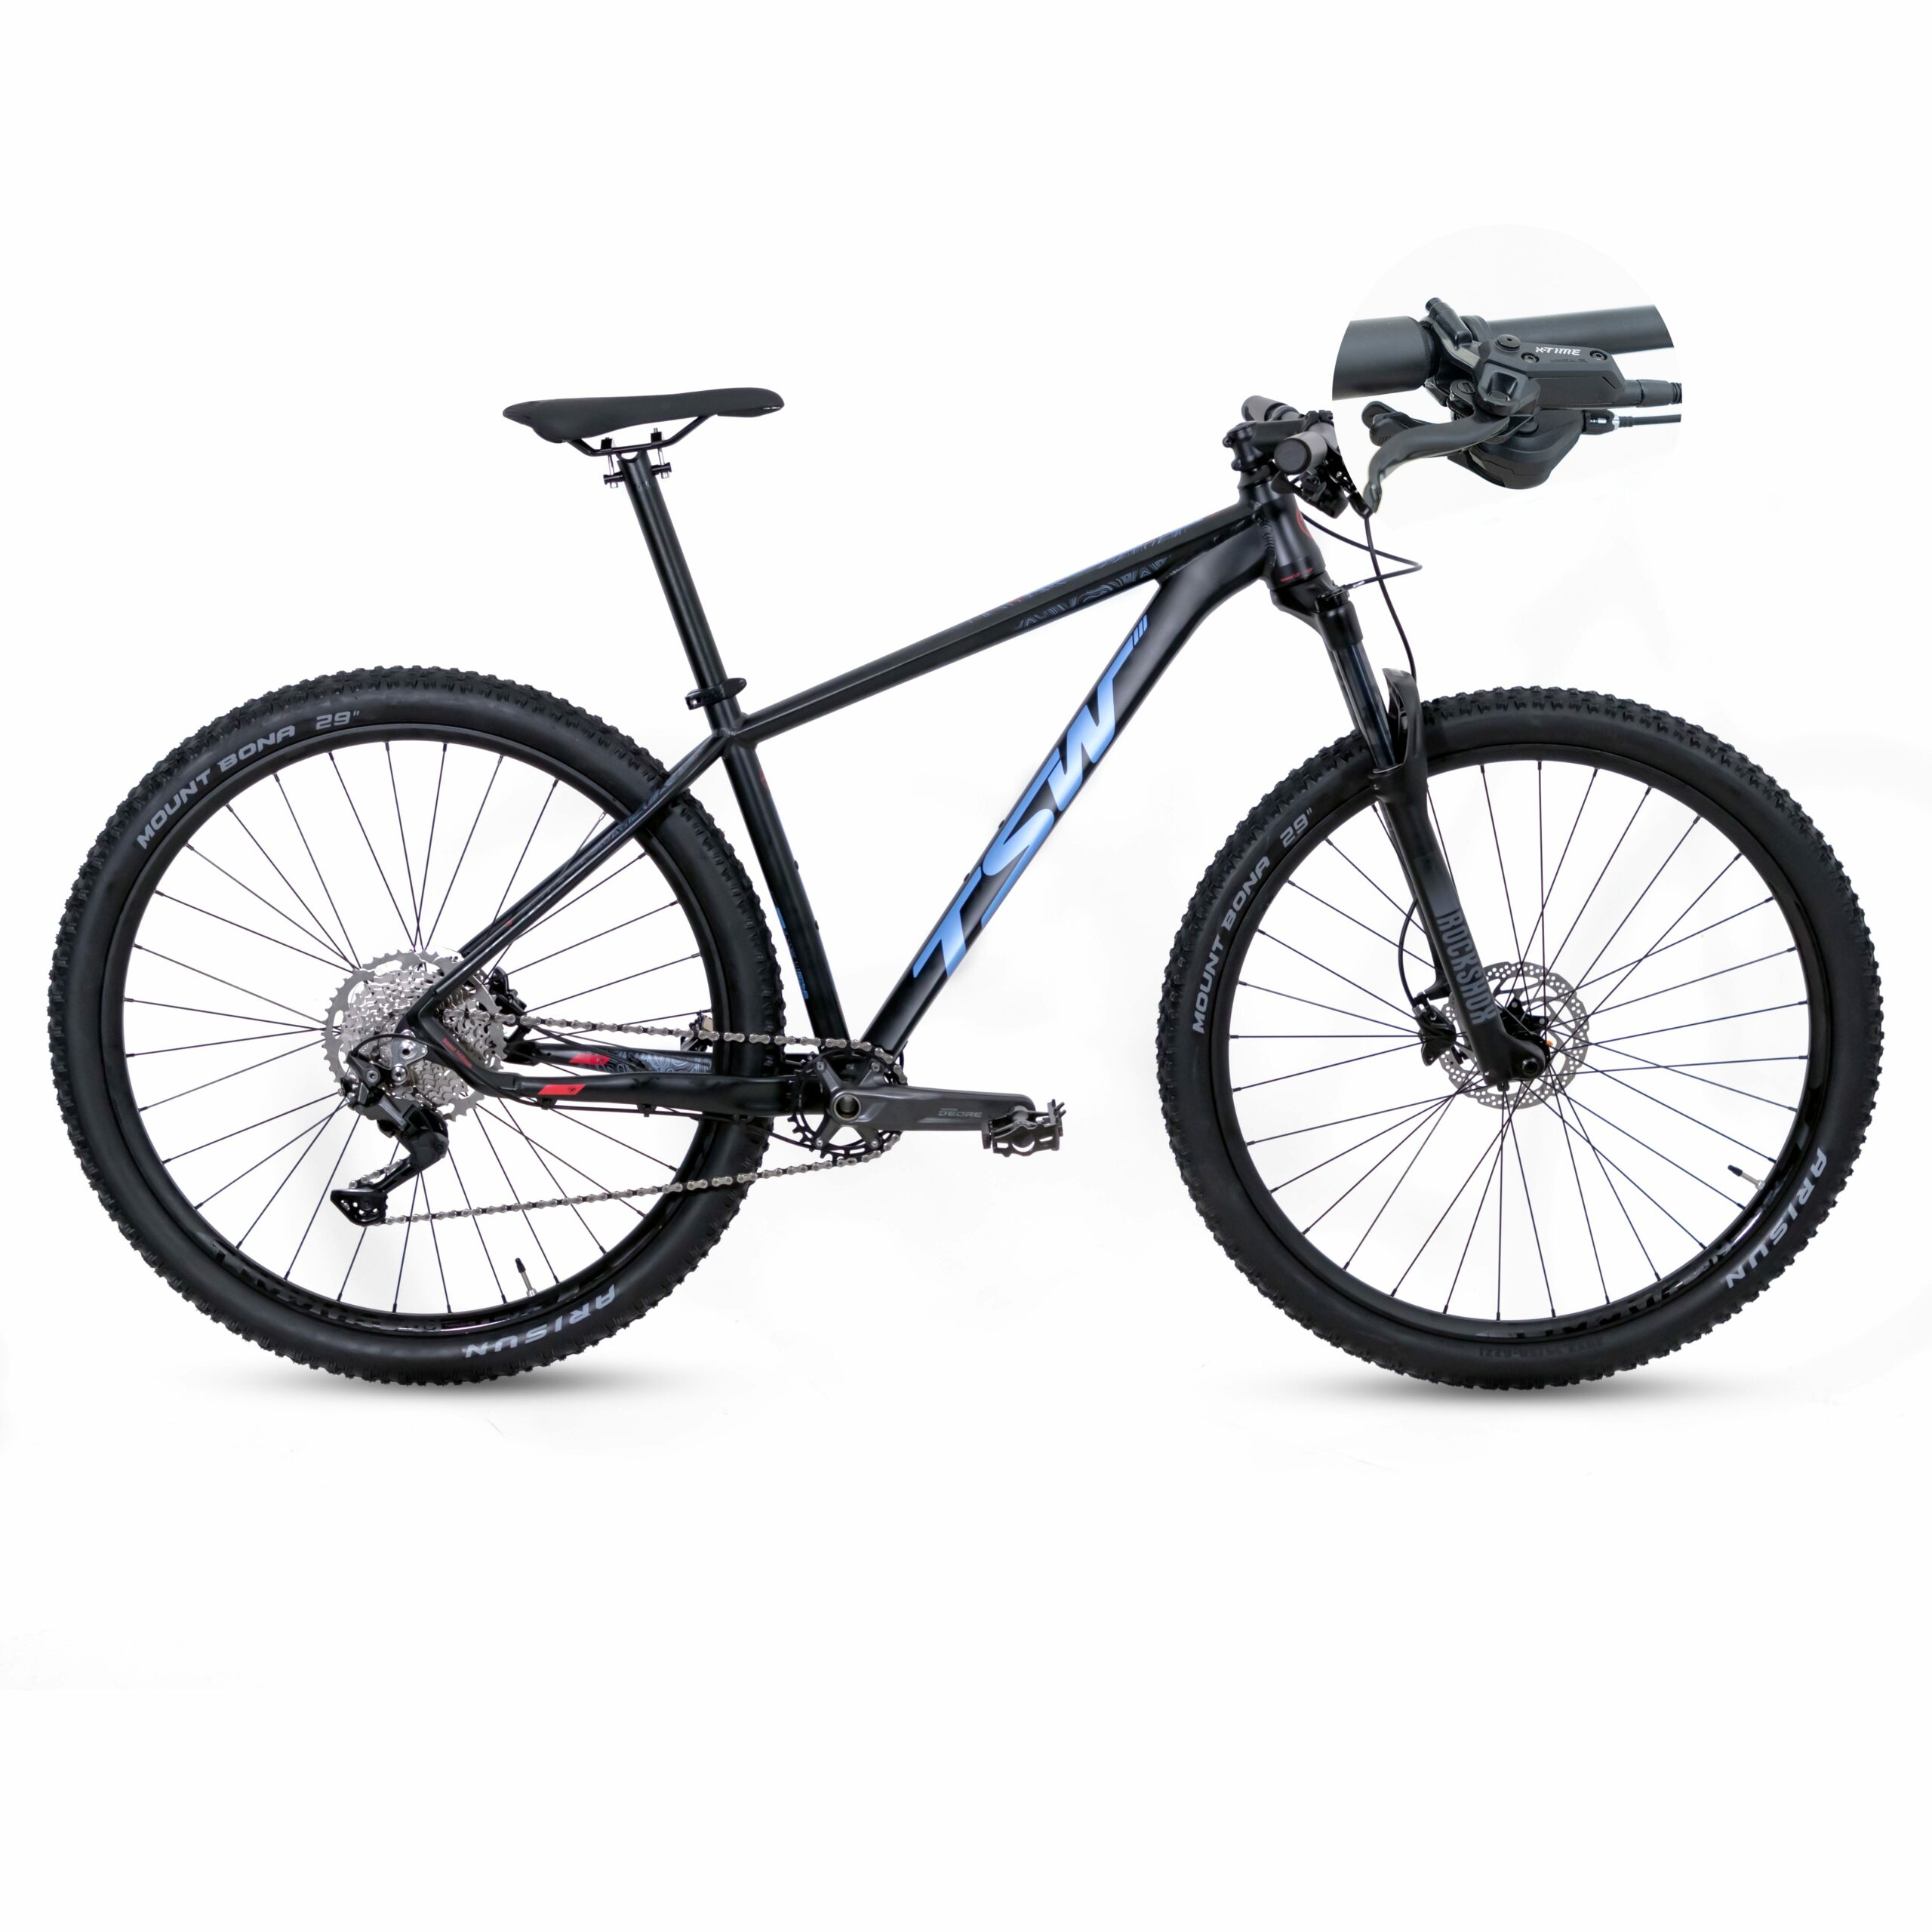 Bicicleta TSW Yukon - Freio X-Time | SH-10 | 2021/2022 - 15.5", Preto/Azul